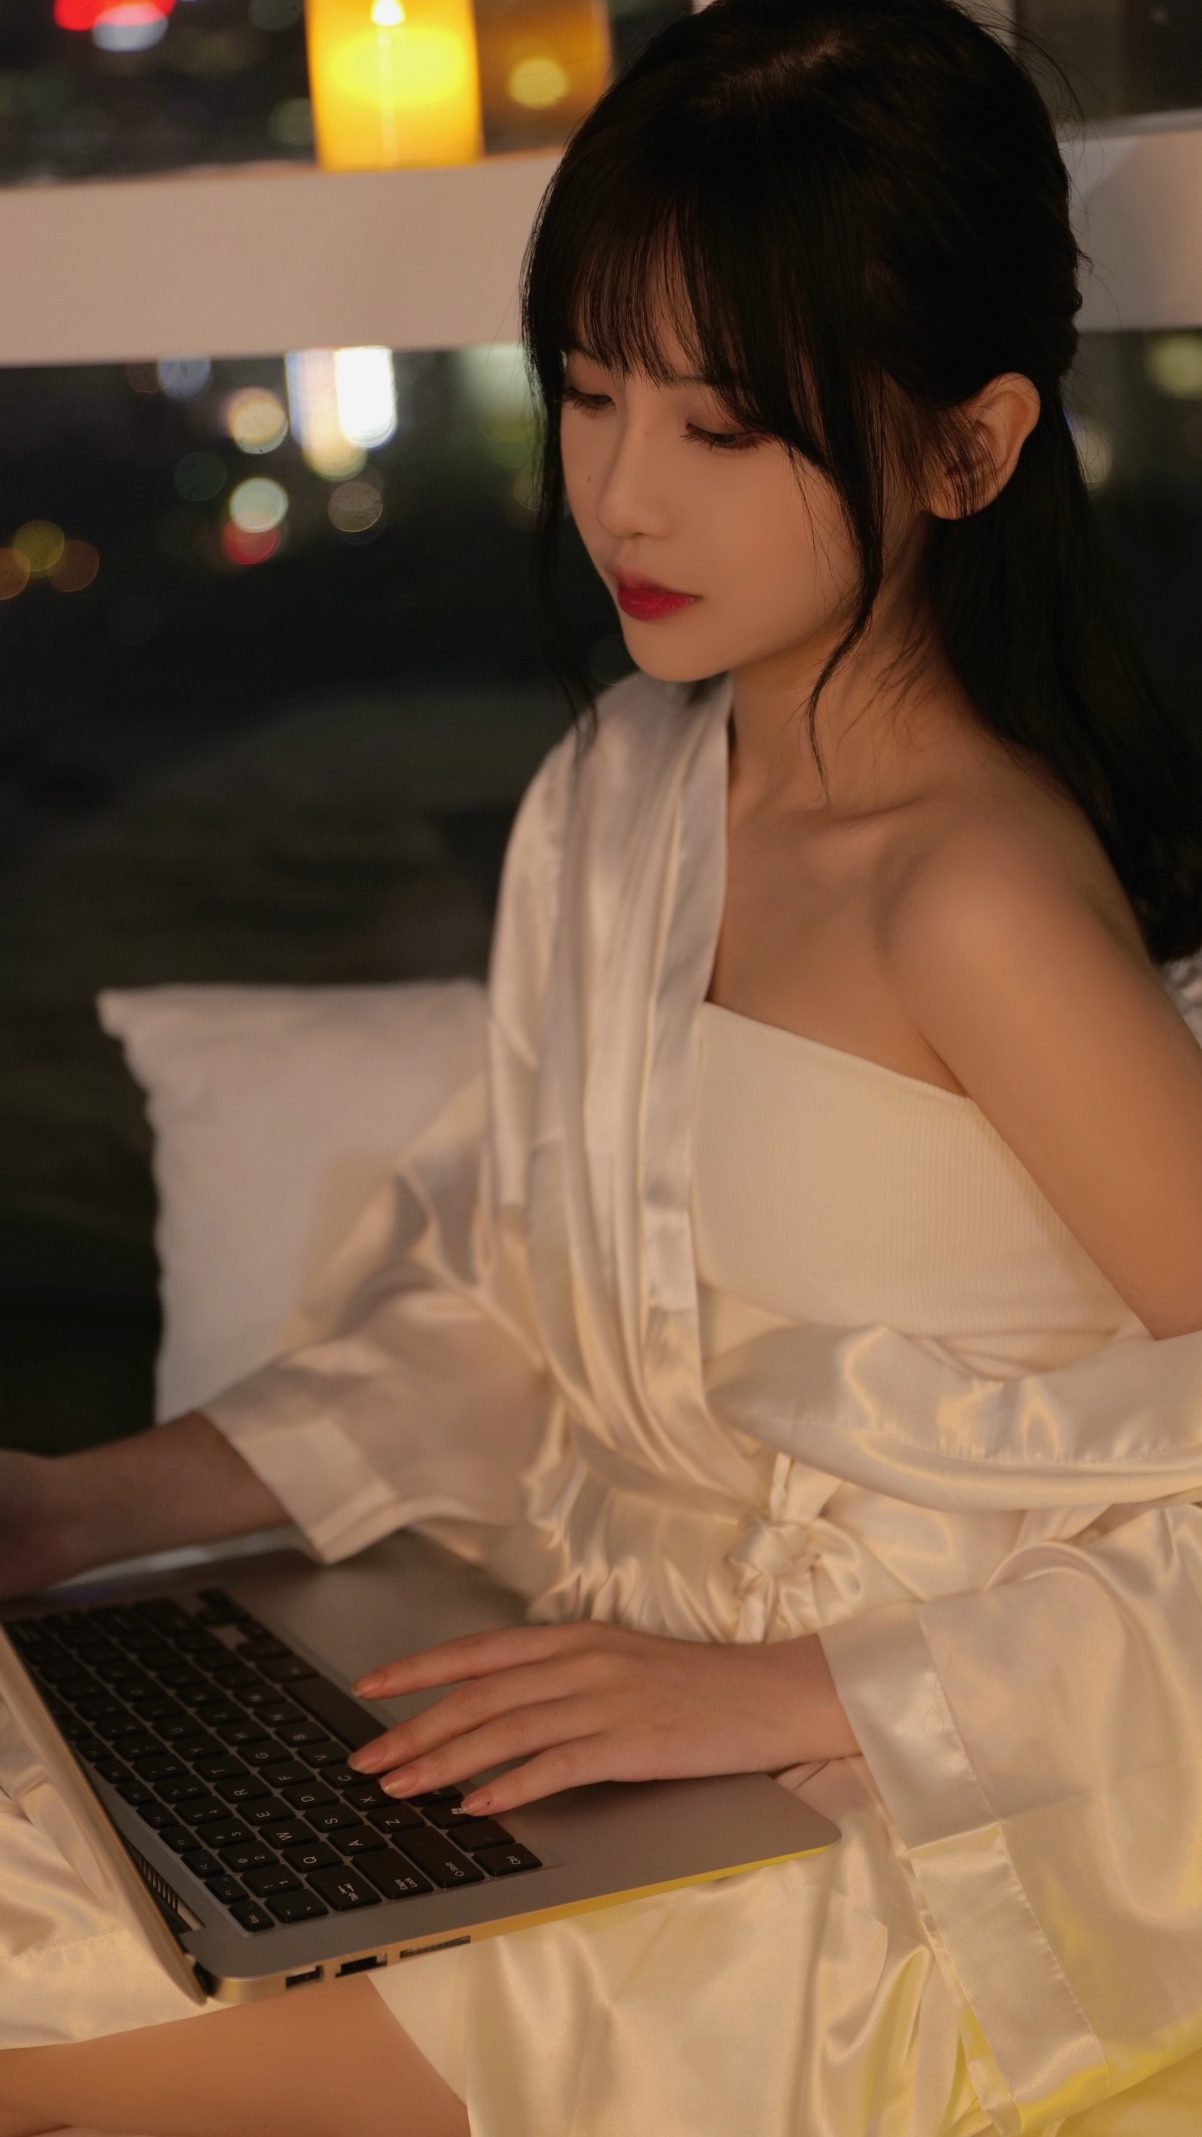 Nawakinbaku最新作品撮影実現 西游降魔篇里的美人香港嫩模周秀娜 [8P] - 有爱写真